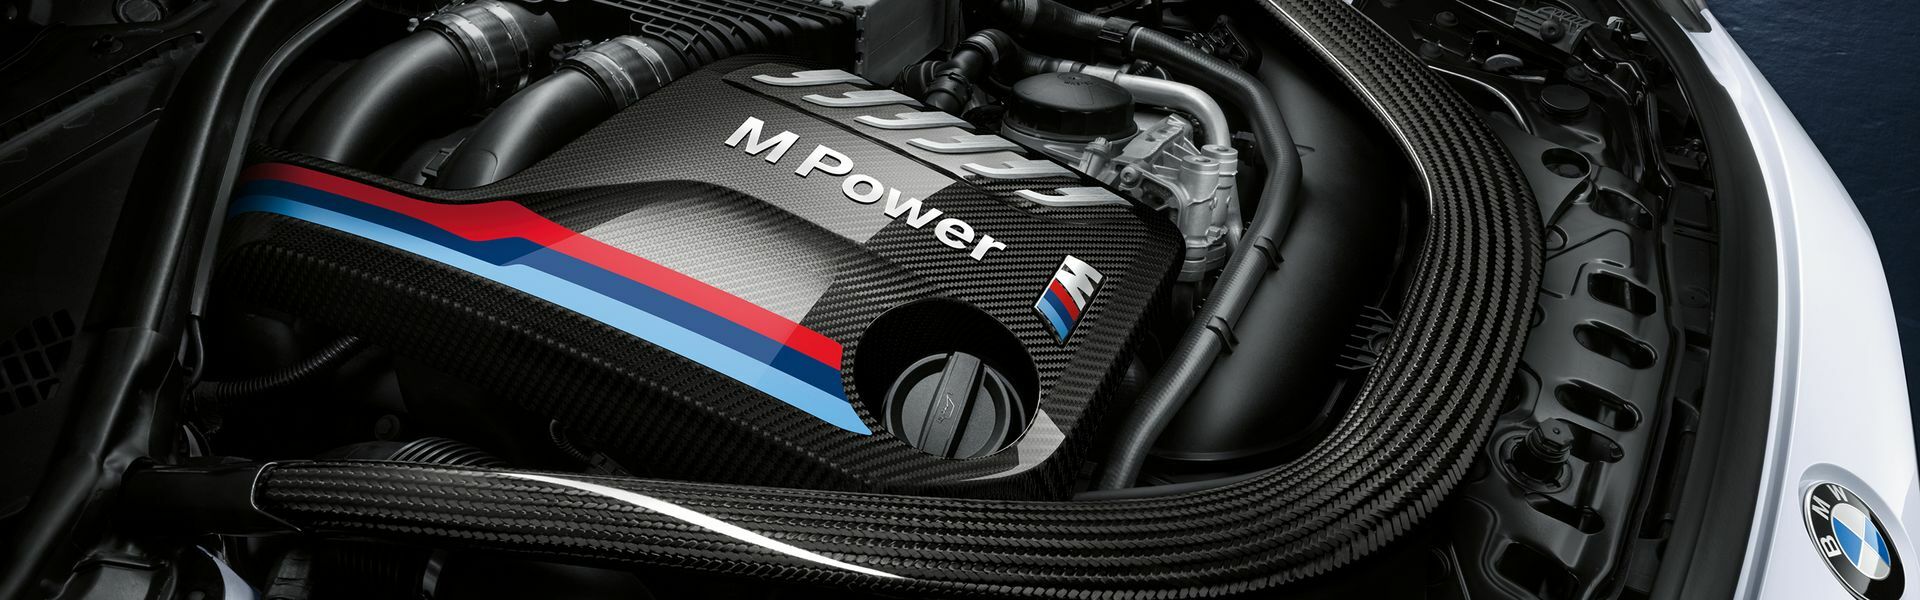 Zvýšení výkonu/ Softwarové úpravy/ Drobné performance díly pro automobil McLaren 540C